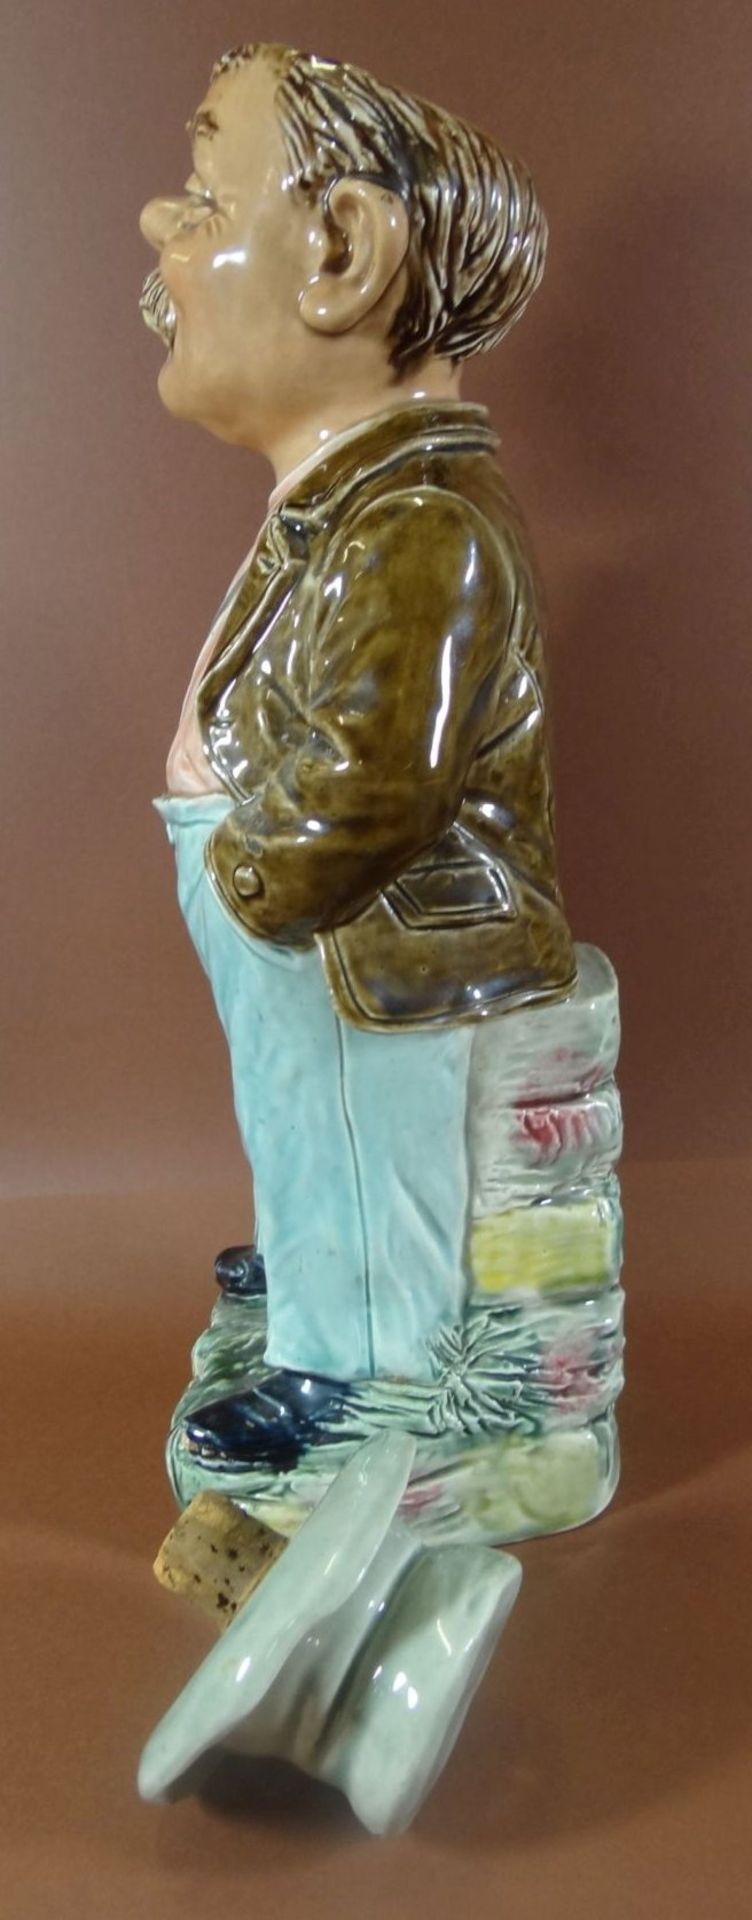 gr. Fayence Scherzflasche, Landstreicher, in Boden Blindmarke BL, Hutrand kleiner Abplatzer, H-31 - Bild 4 aus 7